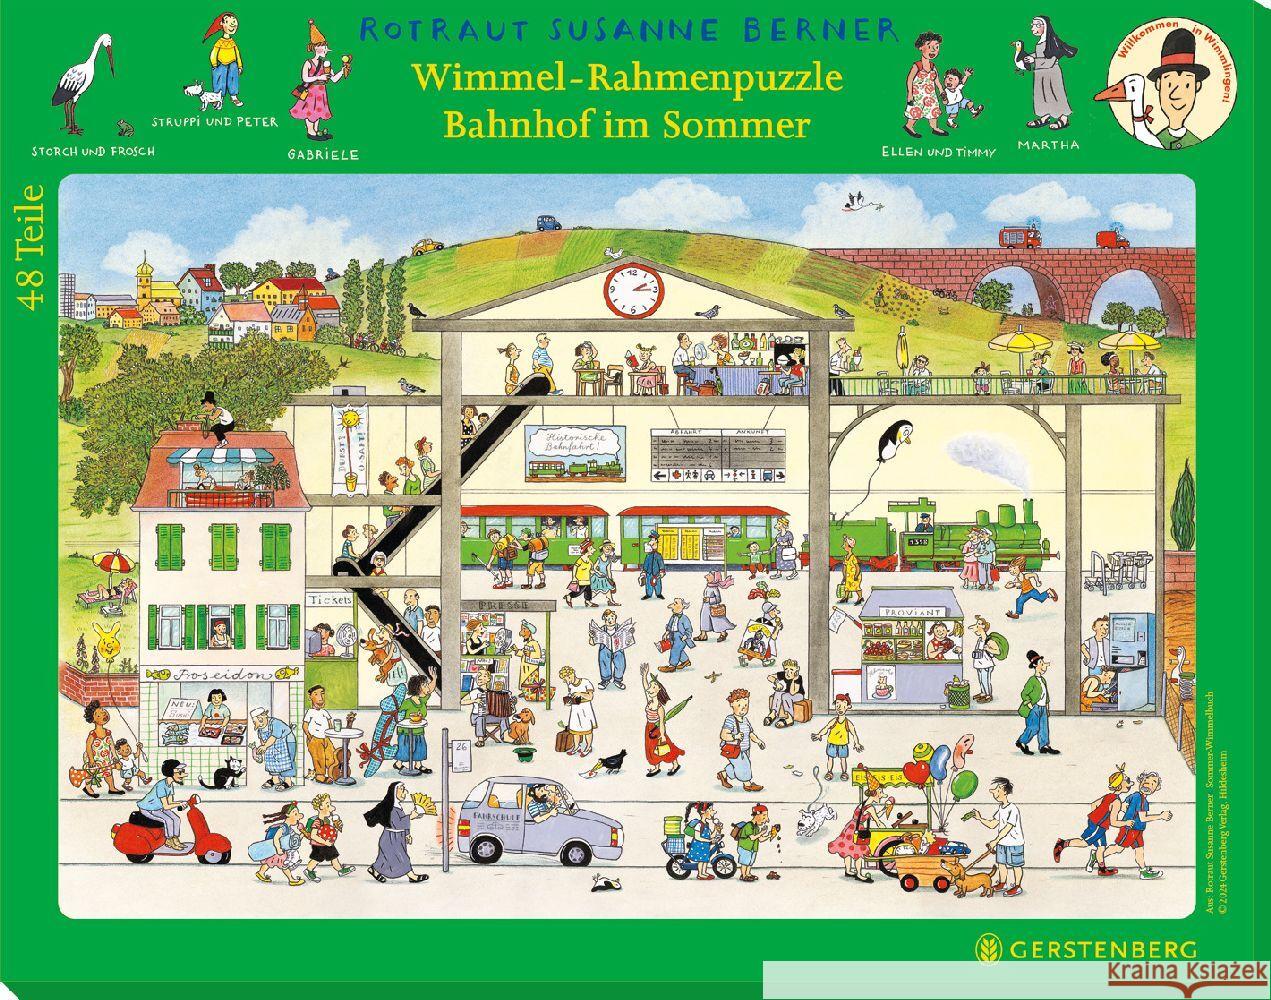 Wimmel-Rahmenpuzzle Sommer Motiv Bahnhof Berner, Rotraut Susanne 4250915936574 Gerstenberg Verlag - książka